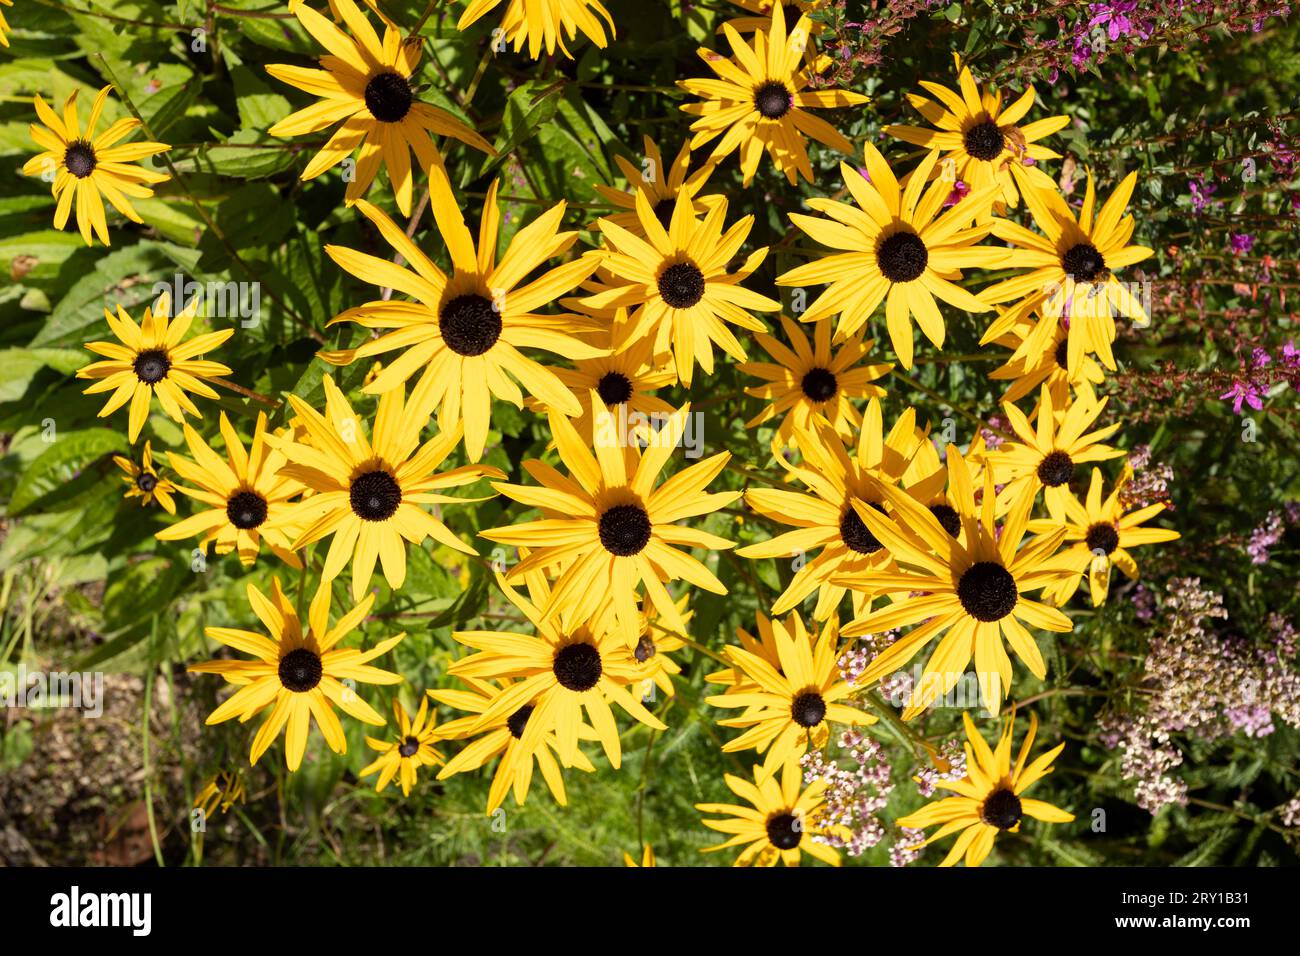 Piante di Rudbeckia, fiori gialli e marroni delle Asteracee, nomi comuni di coneflowers e susans dagli occhi neri. Sensazione positiva e felice in primavera Foto Stock